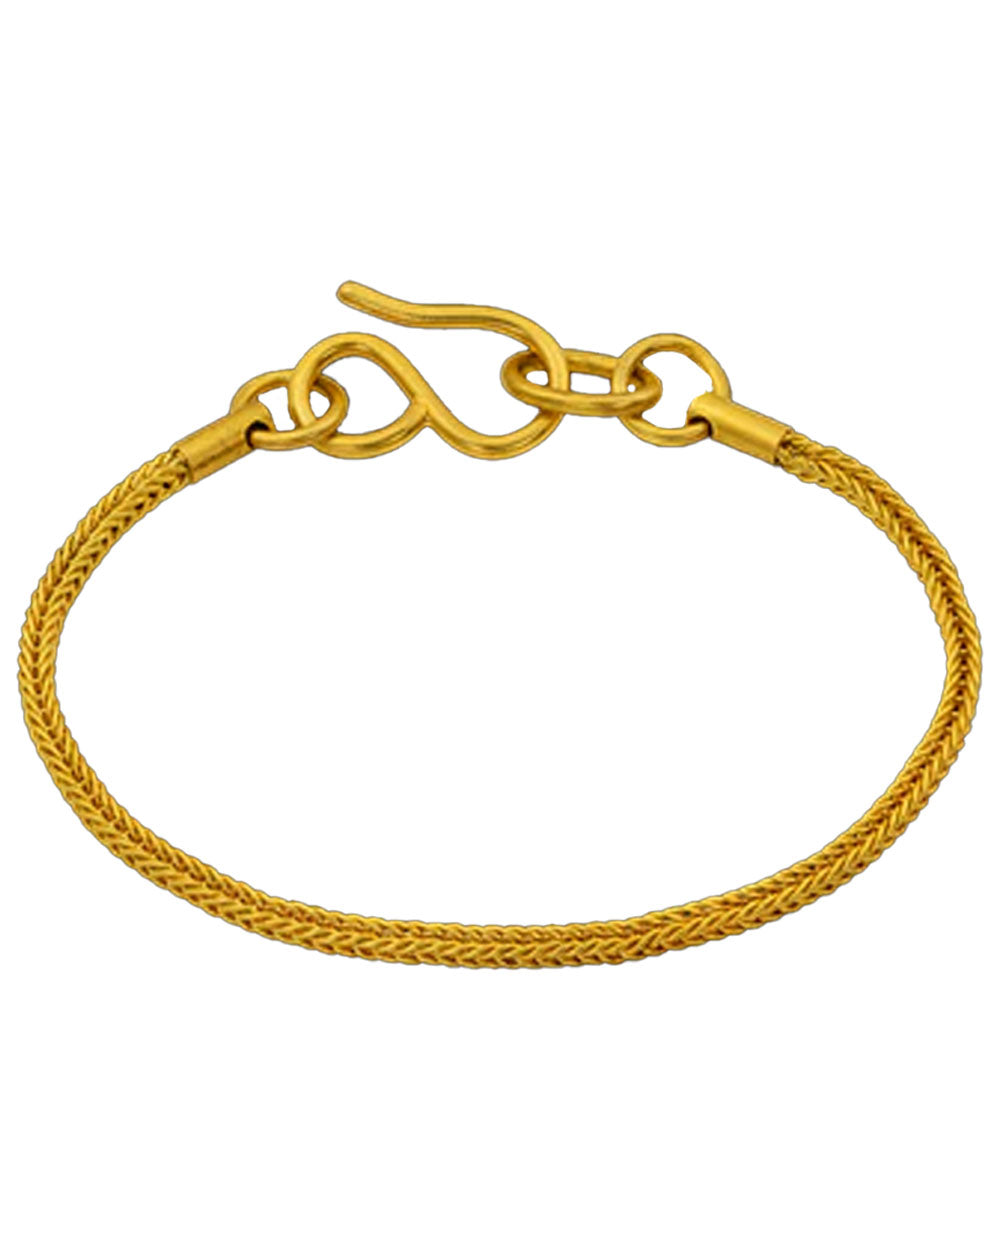 Handmade Woven Chain Bracelet